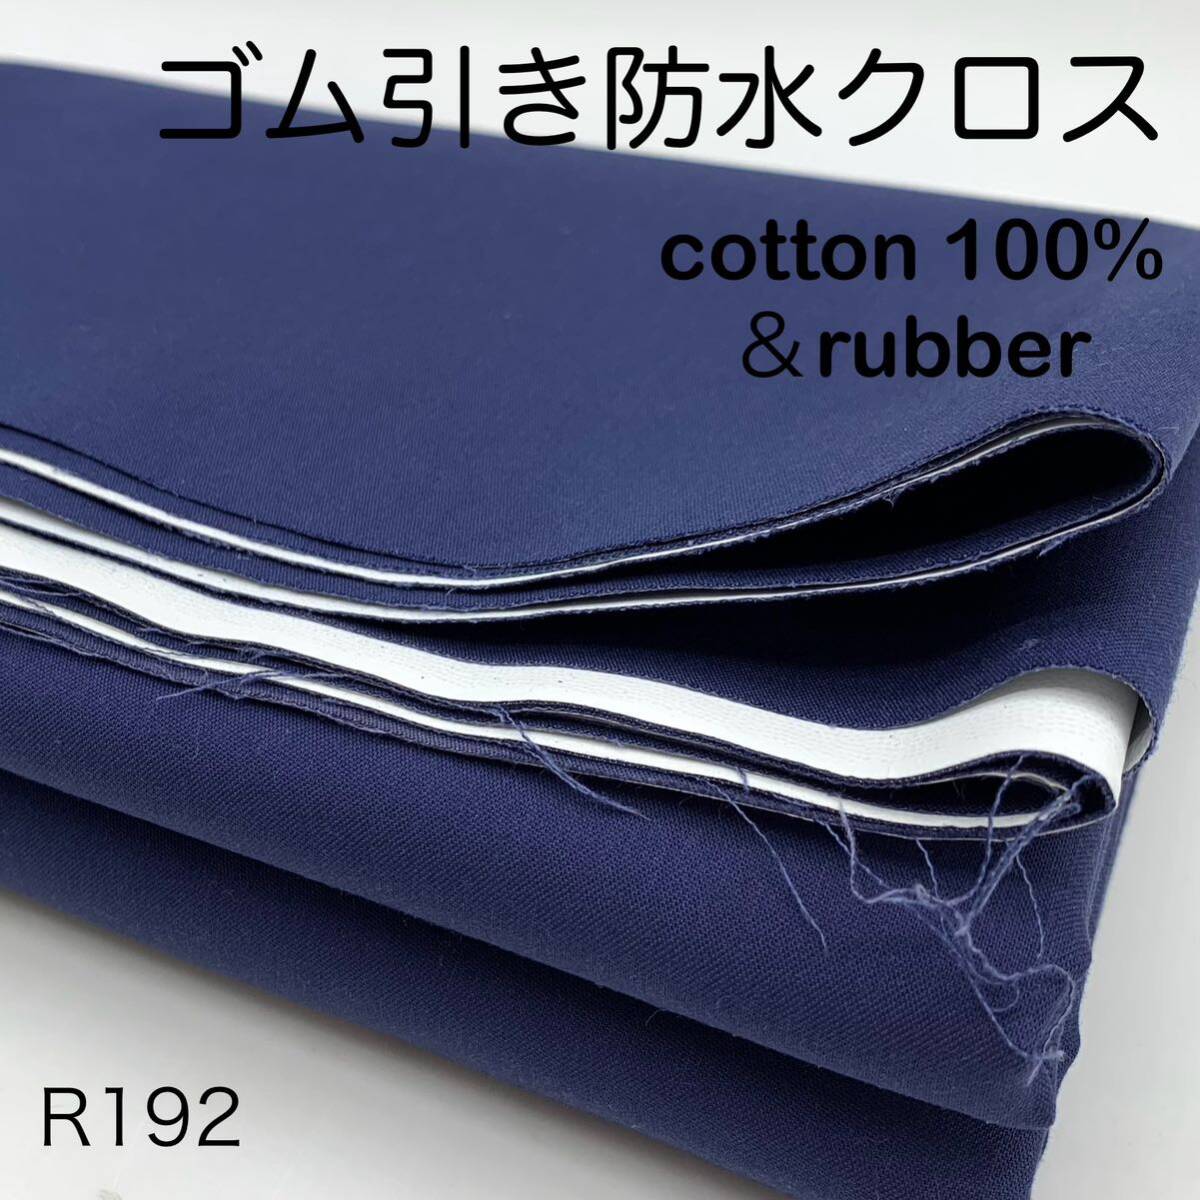 R192 резина скидка водонепроницаемый Cross 2m хлопок 100% темно-синий × оттенок белого сделано в Японии ткань уличный 